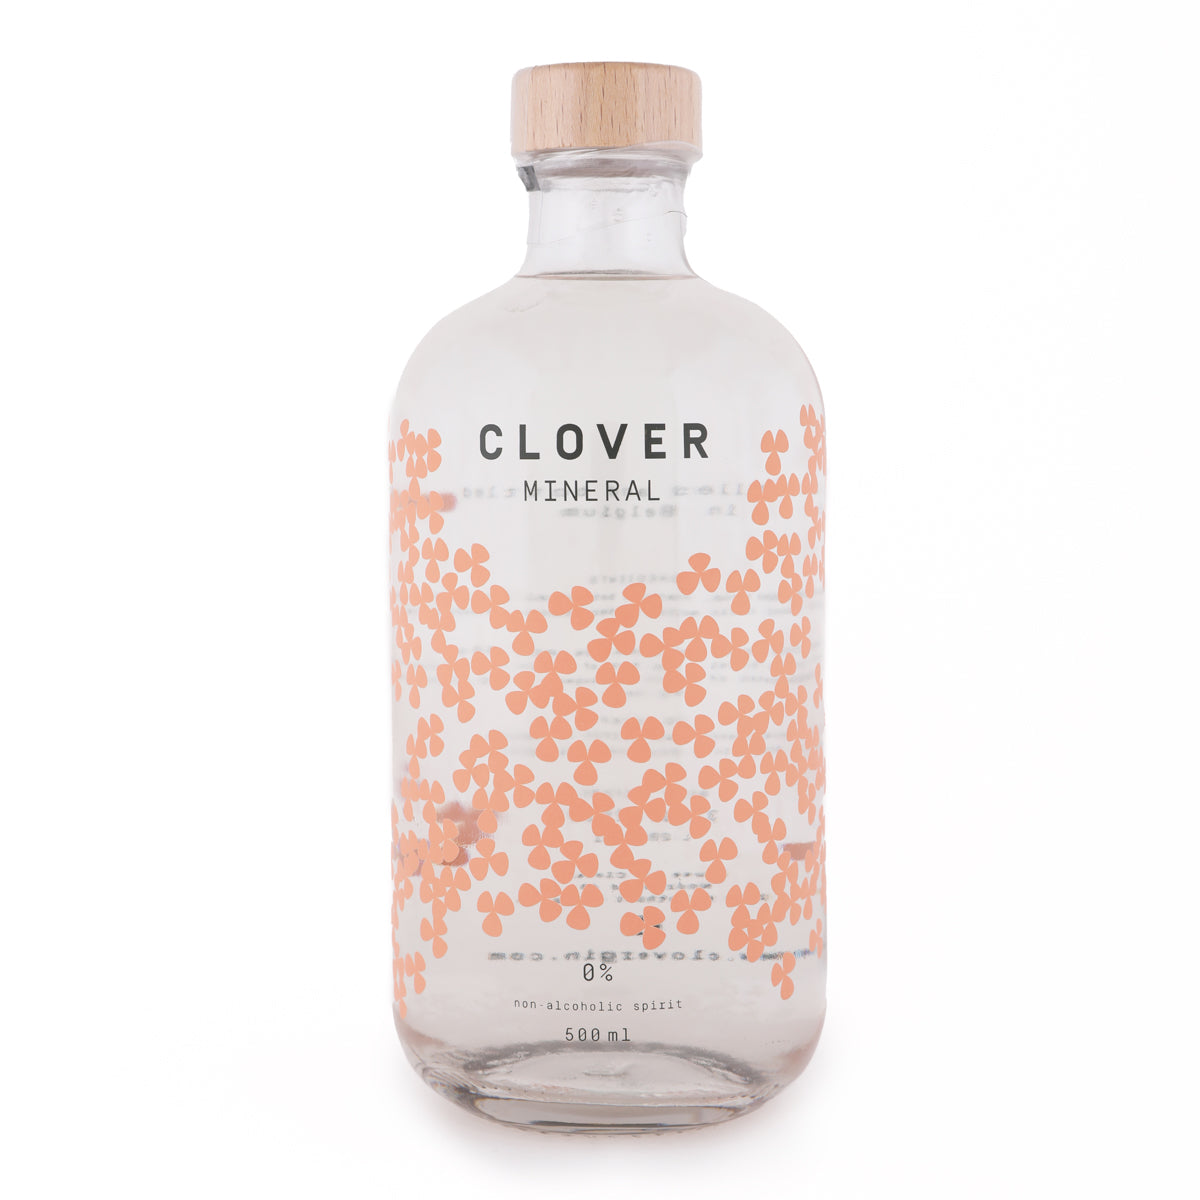 Clover Mineral Non-Alcholic